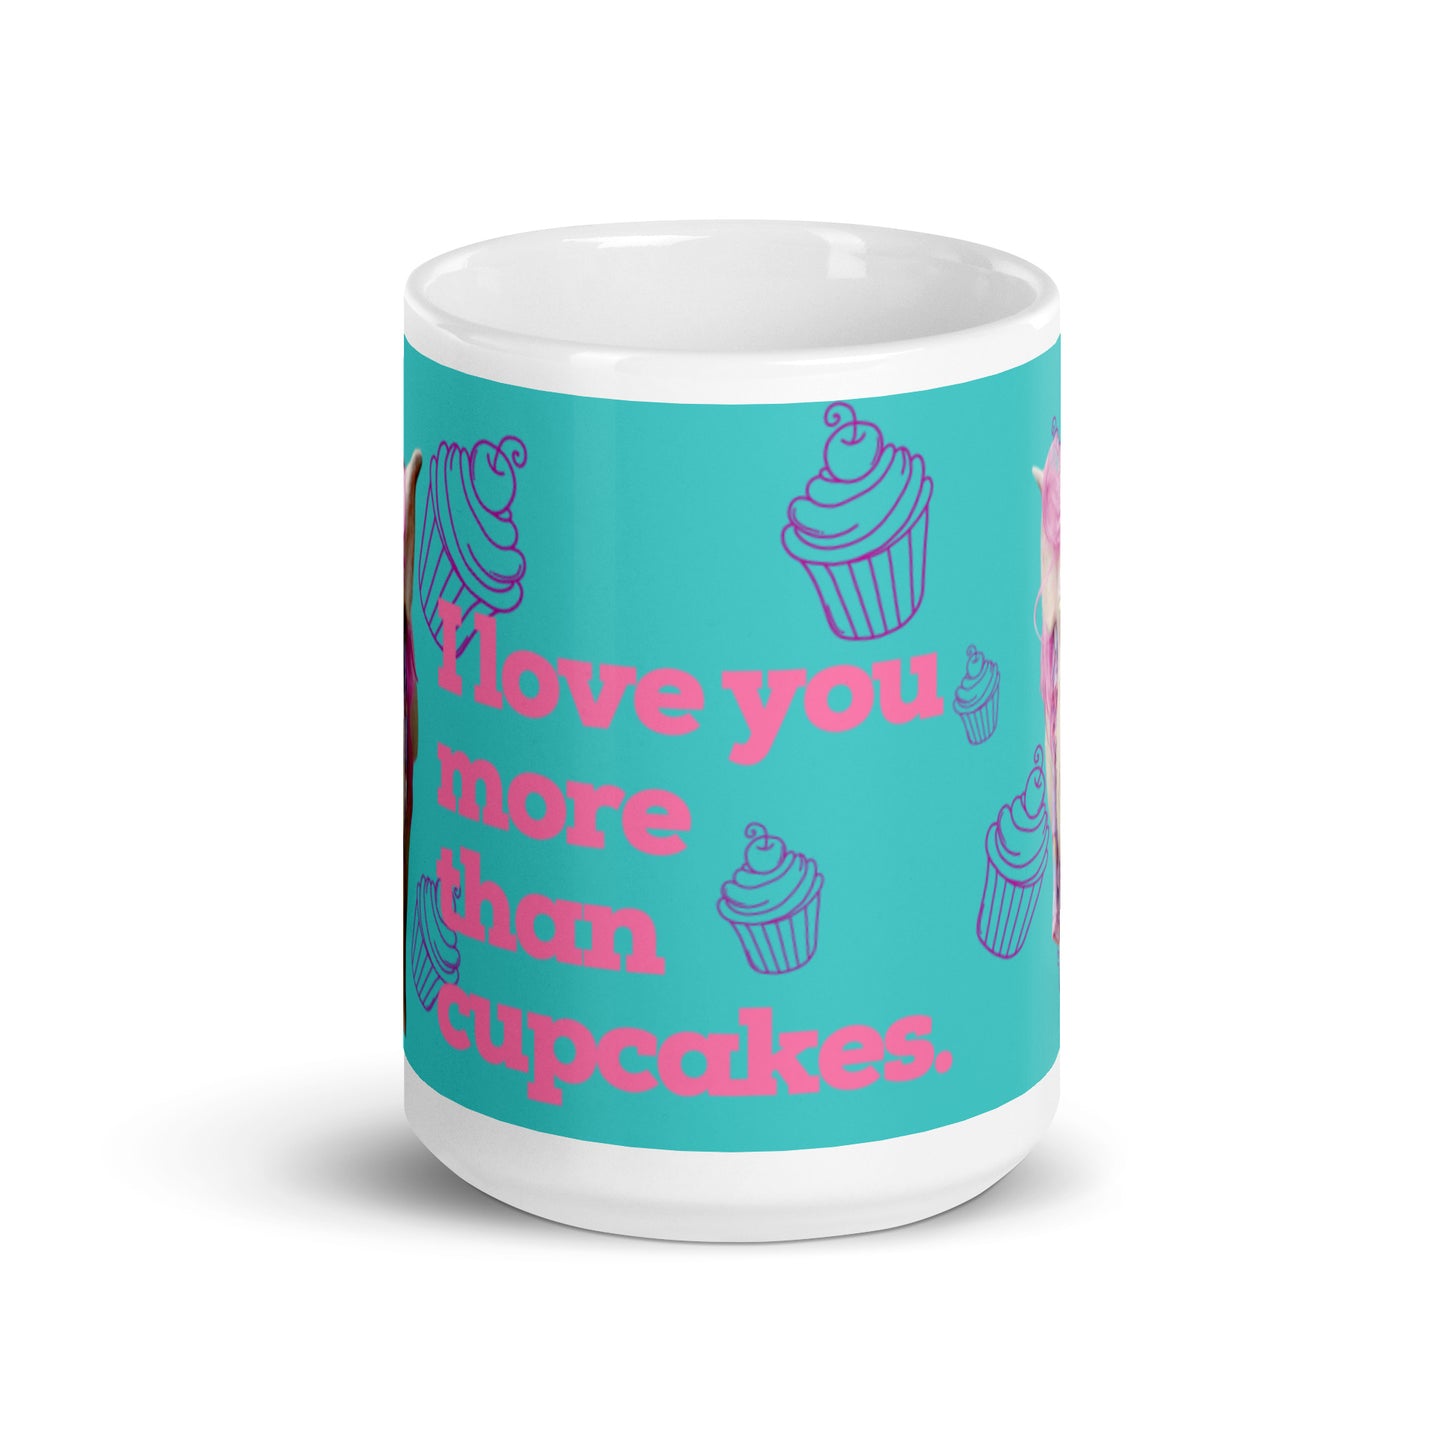 NEW- I love you more than Cupcakes - White glossy mug